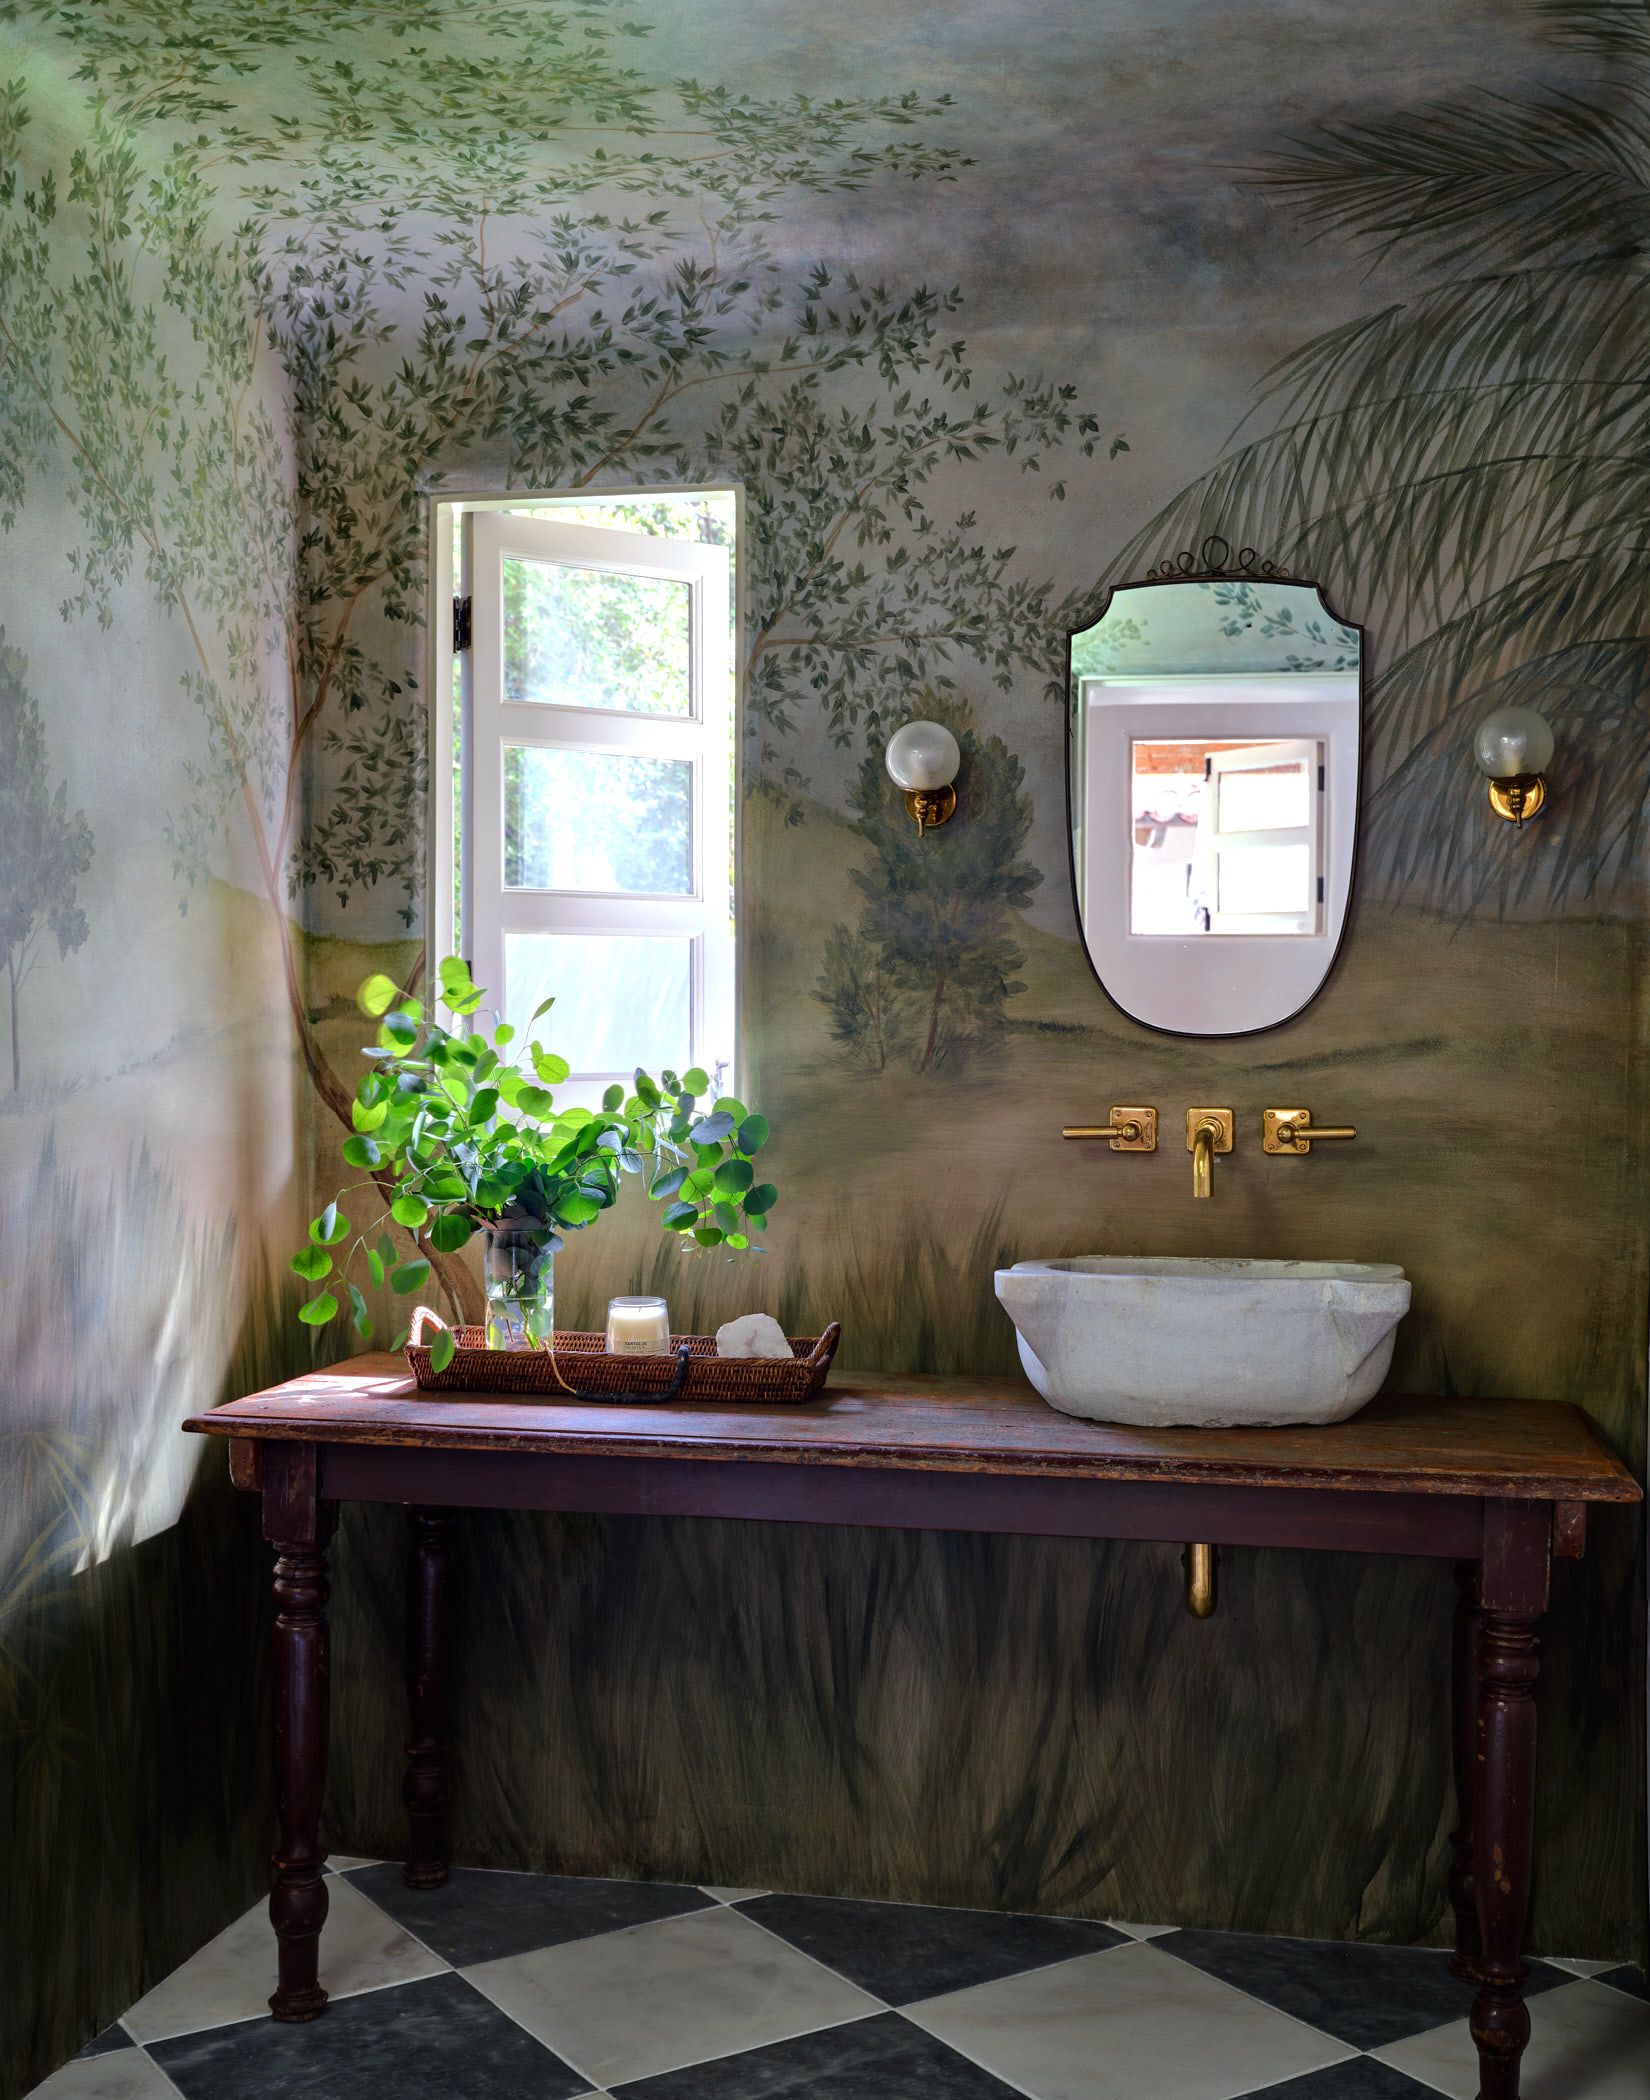 4 Small Bathroom Vanities, Sherman Oaks Bathroom Remodel